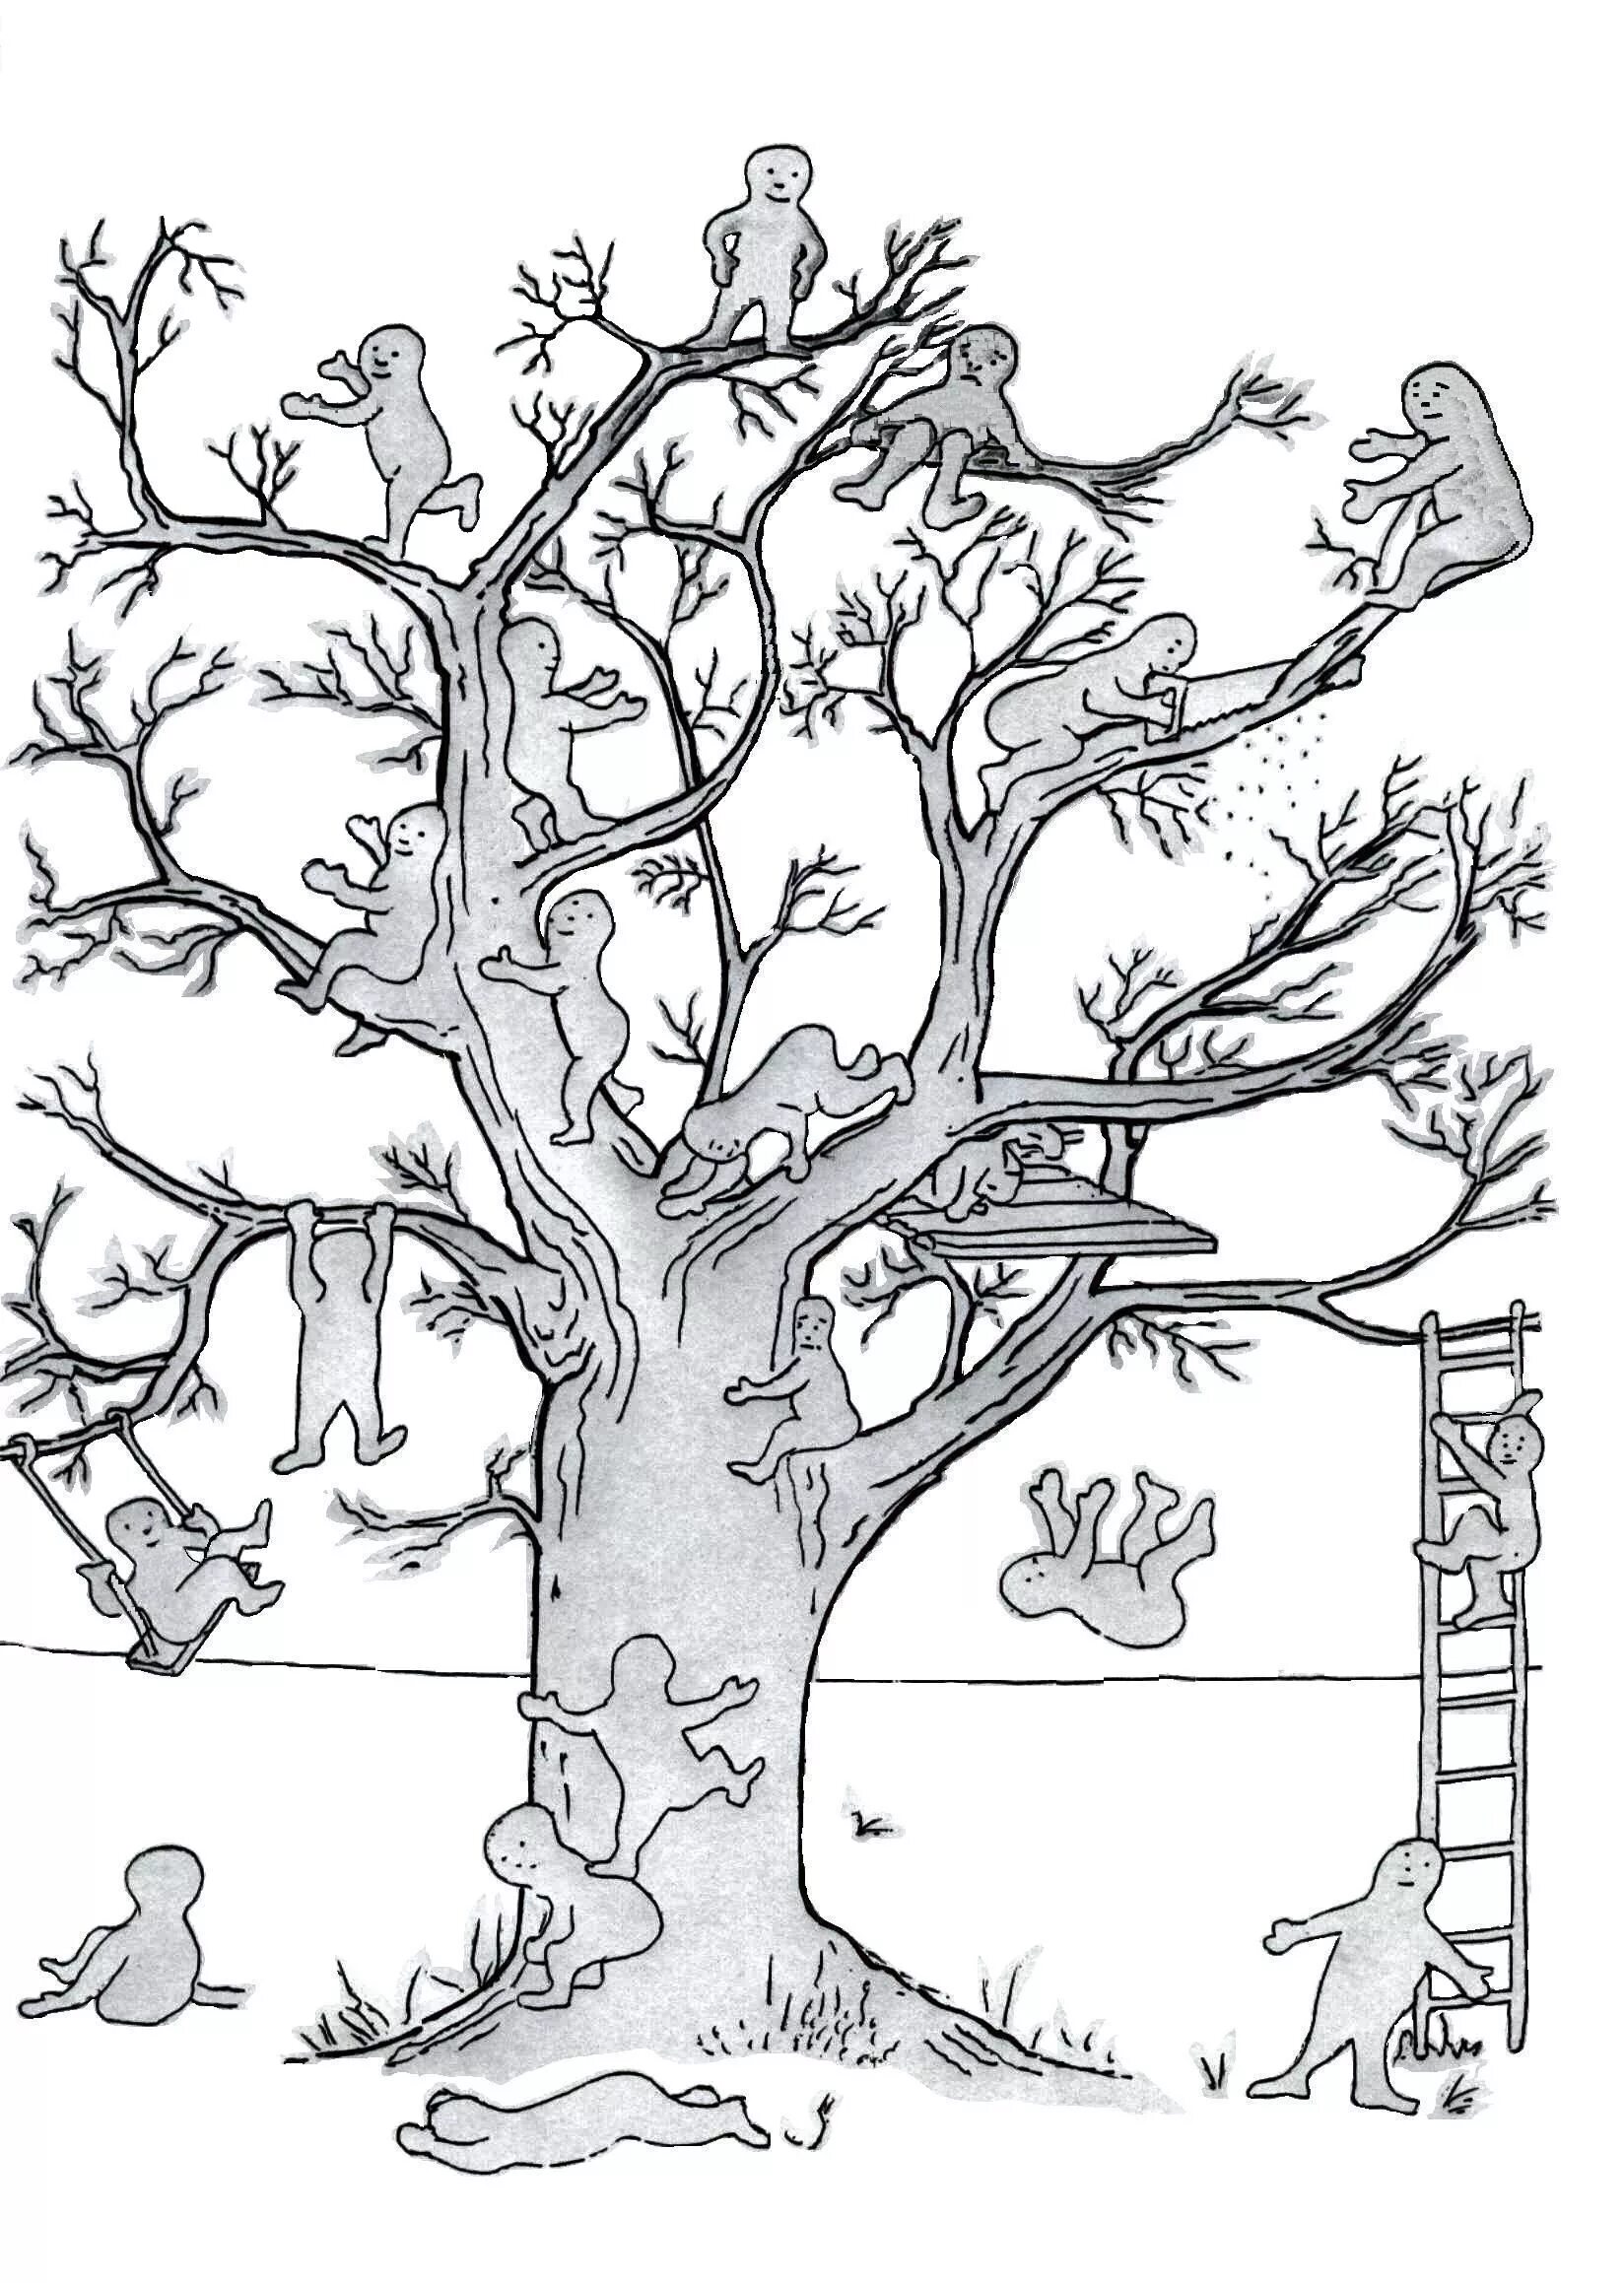 Результат теста дерево. Методика дерево Пономаренко. Проективная методика дерево Лампен. Методика «дерево с человечками» (д. Лампен, л. п. Пономаренко). Дерево с человечками.